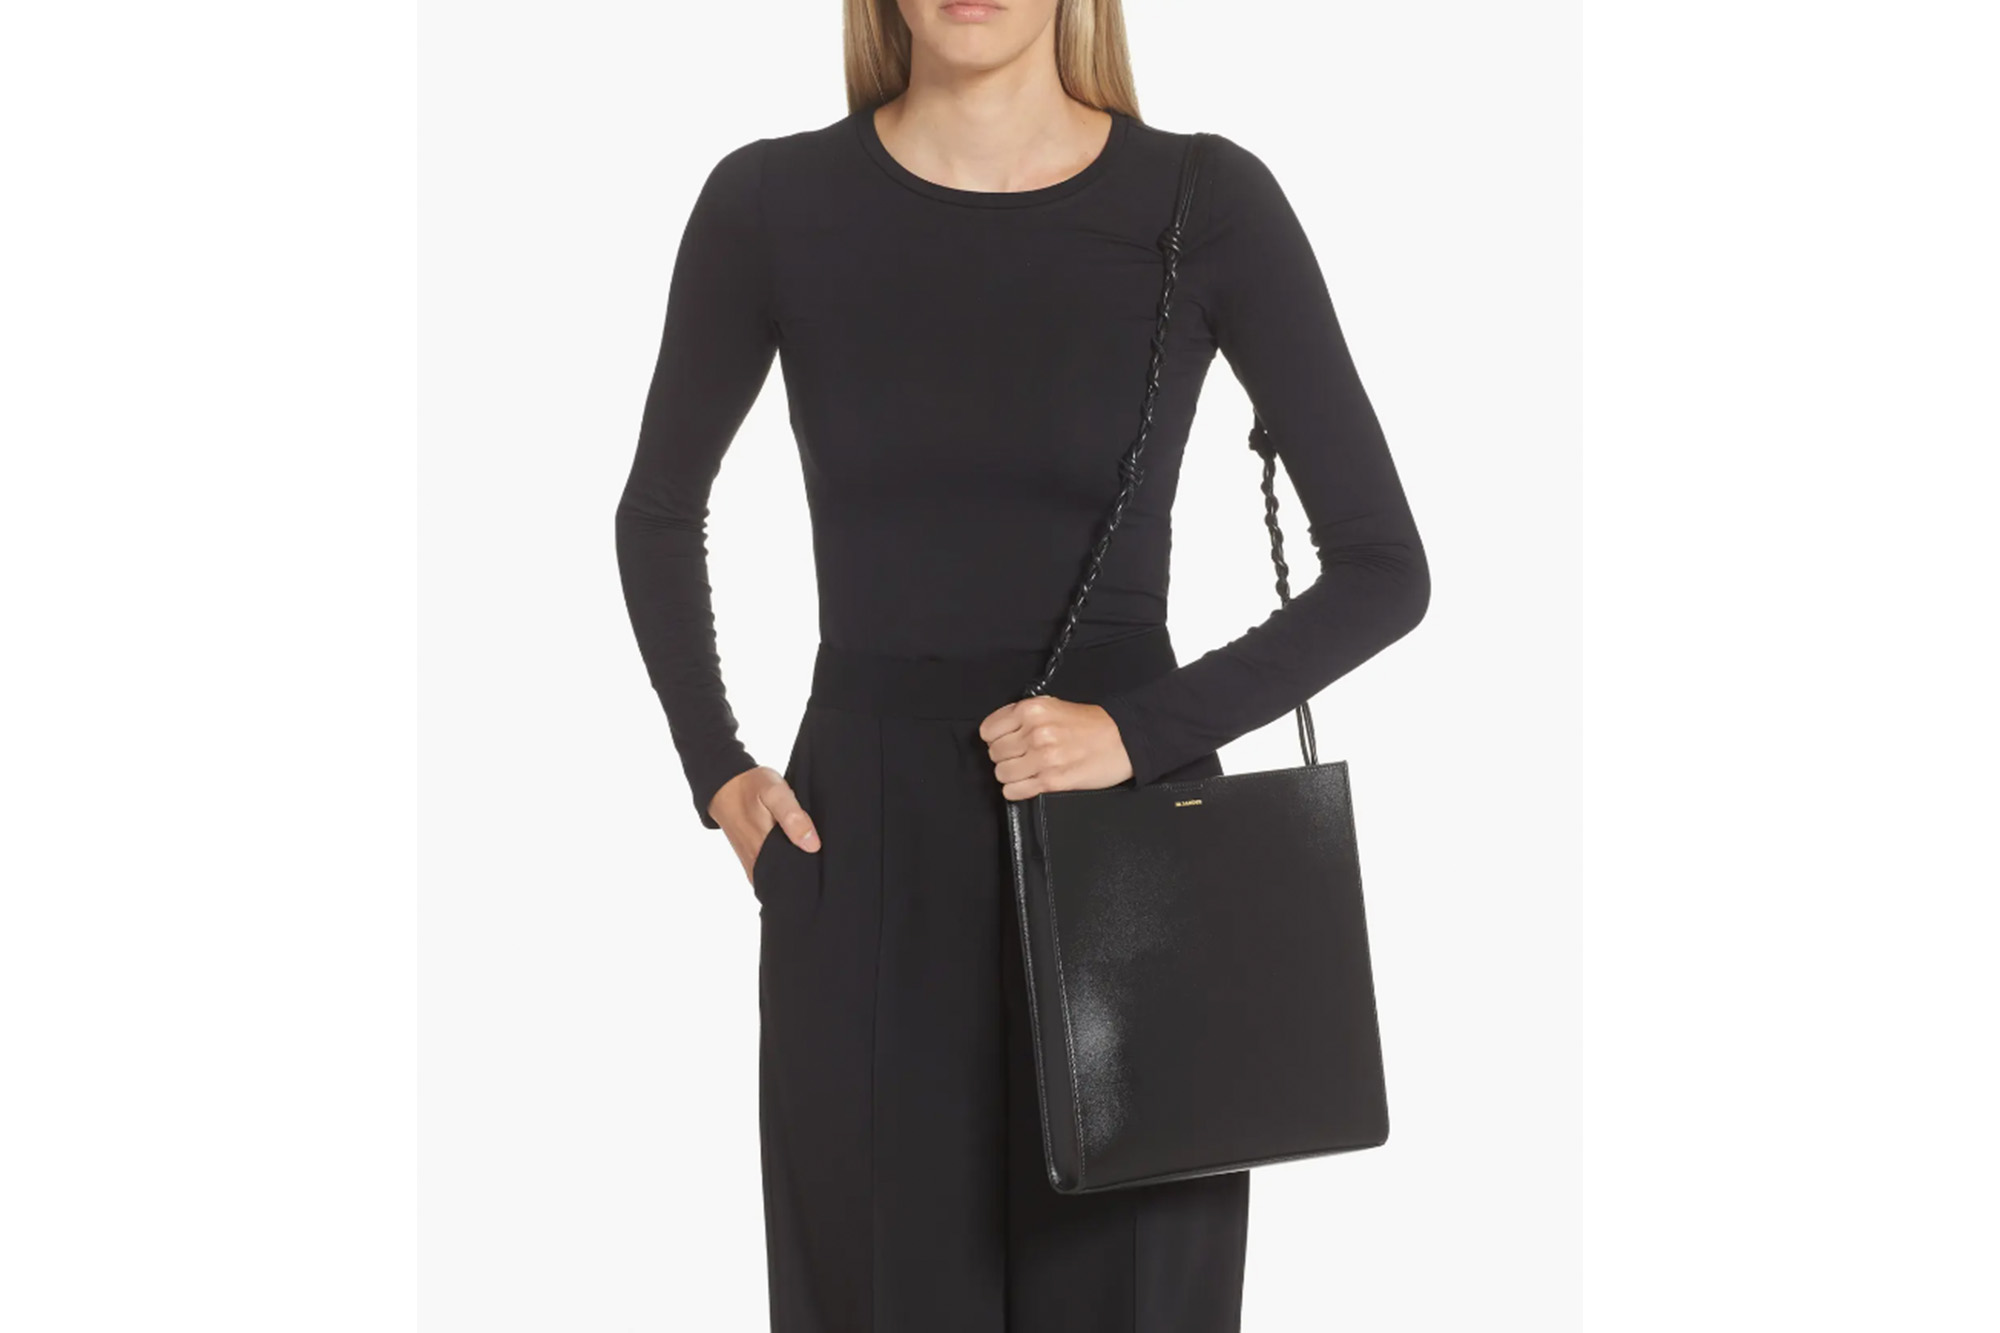 Ein Model in einem schwarzen Outfit mit passender Handtasche